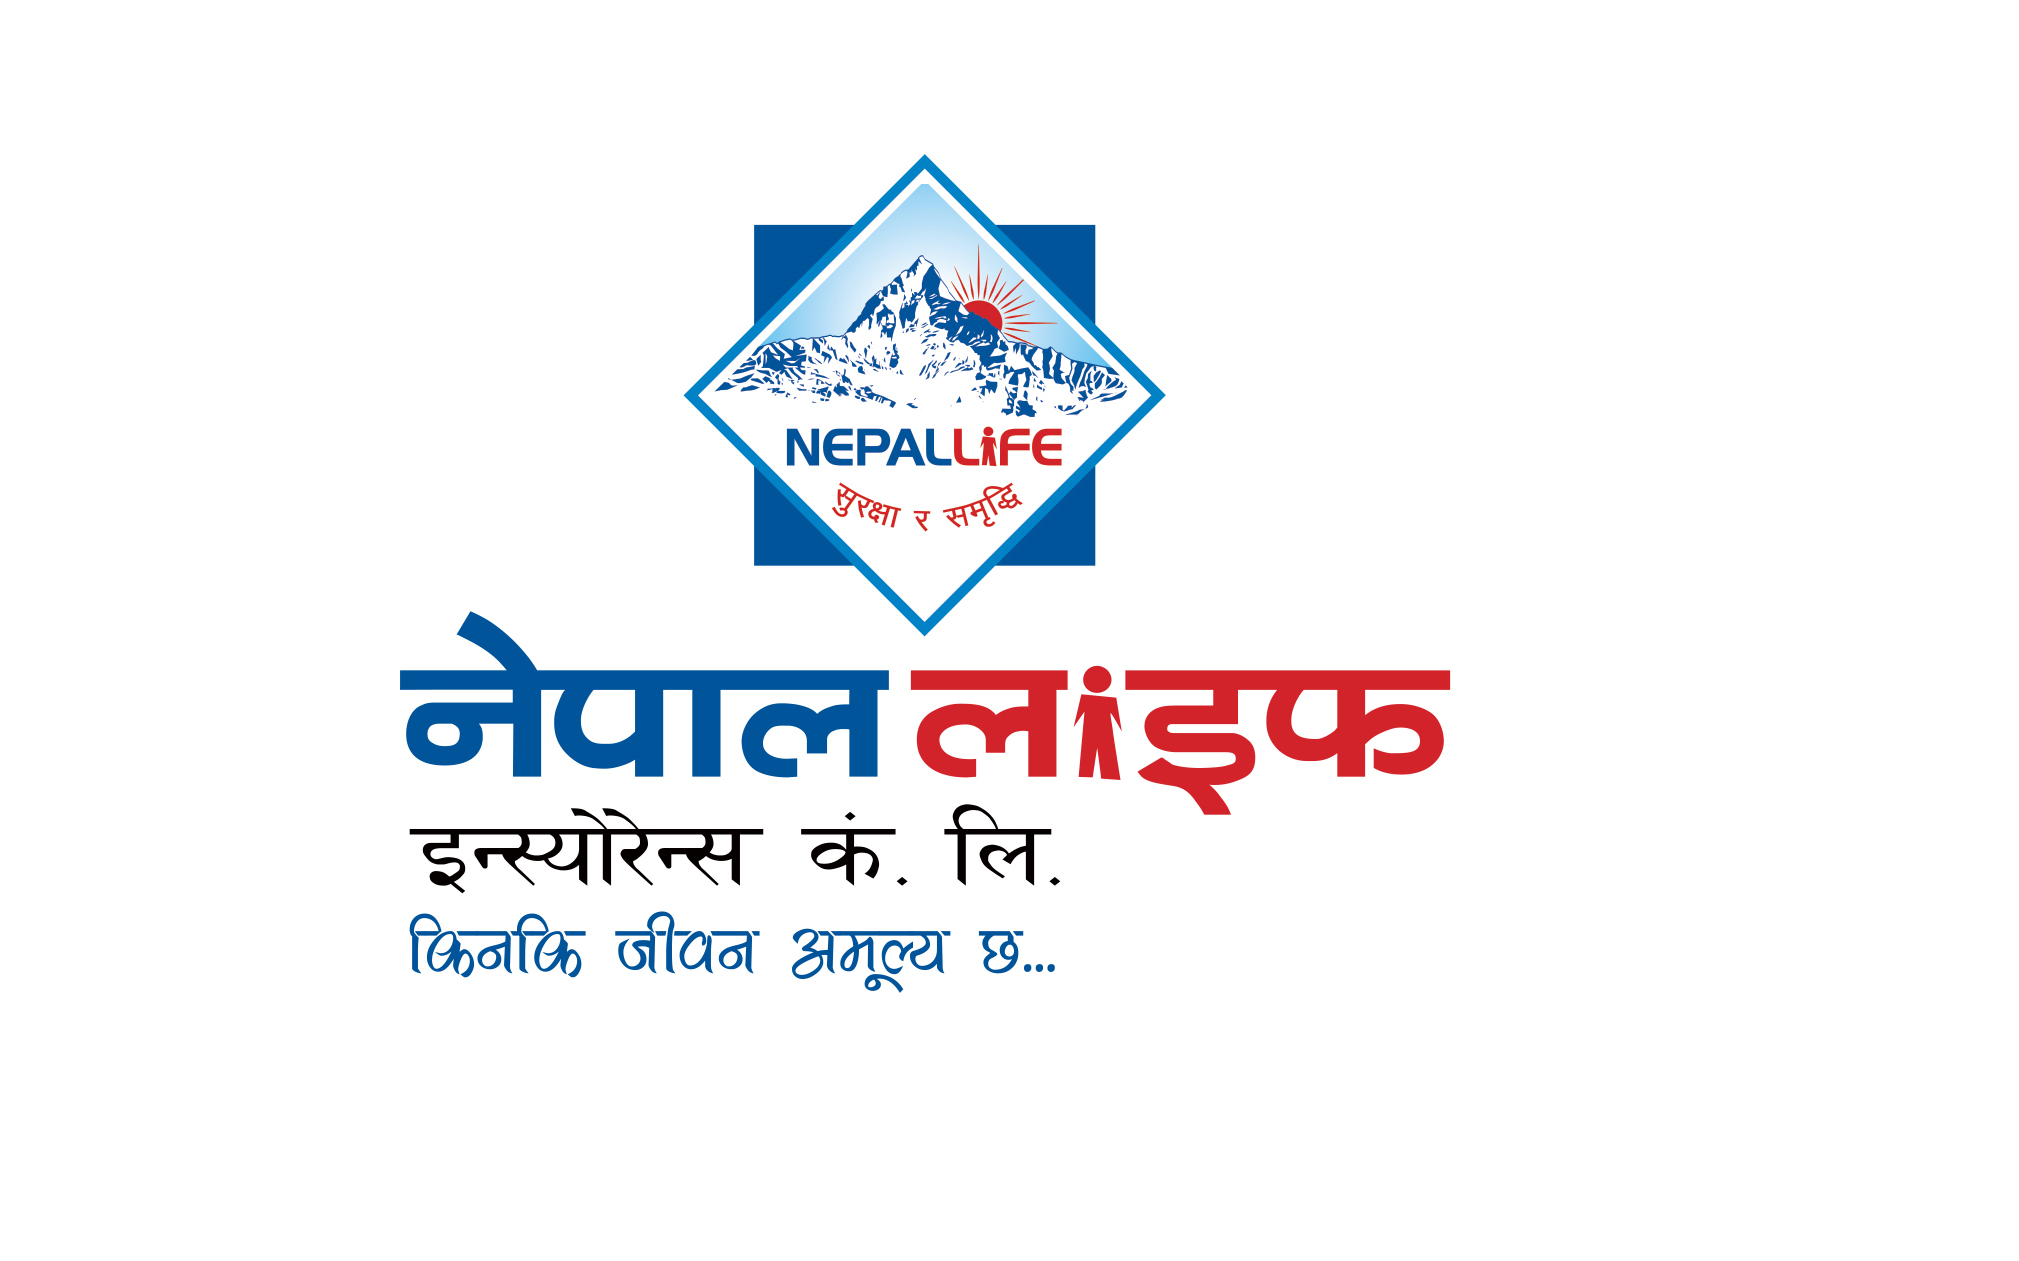 नेपाल लाइफद्धारा ३ लाख १४ हजार मृत्यु दाबी भुक्तानी